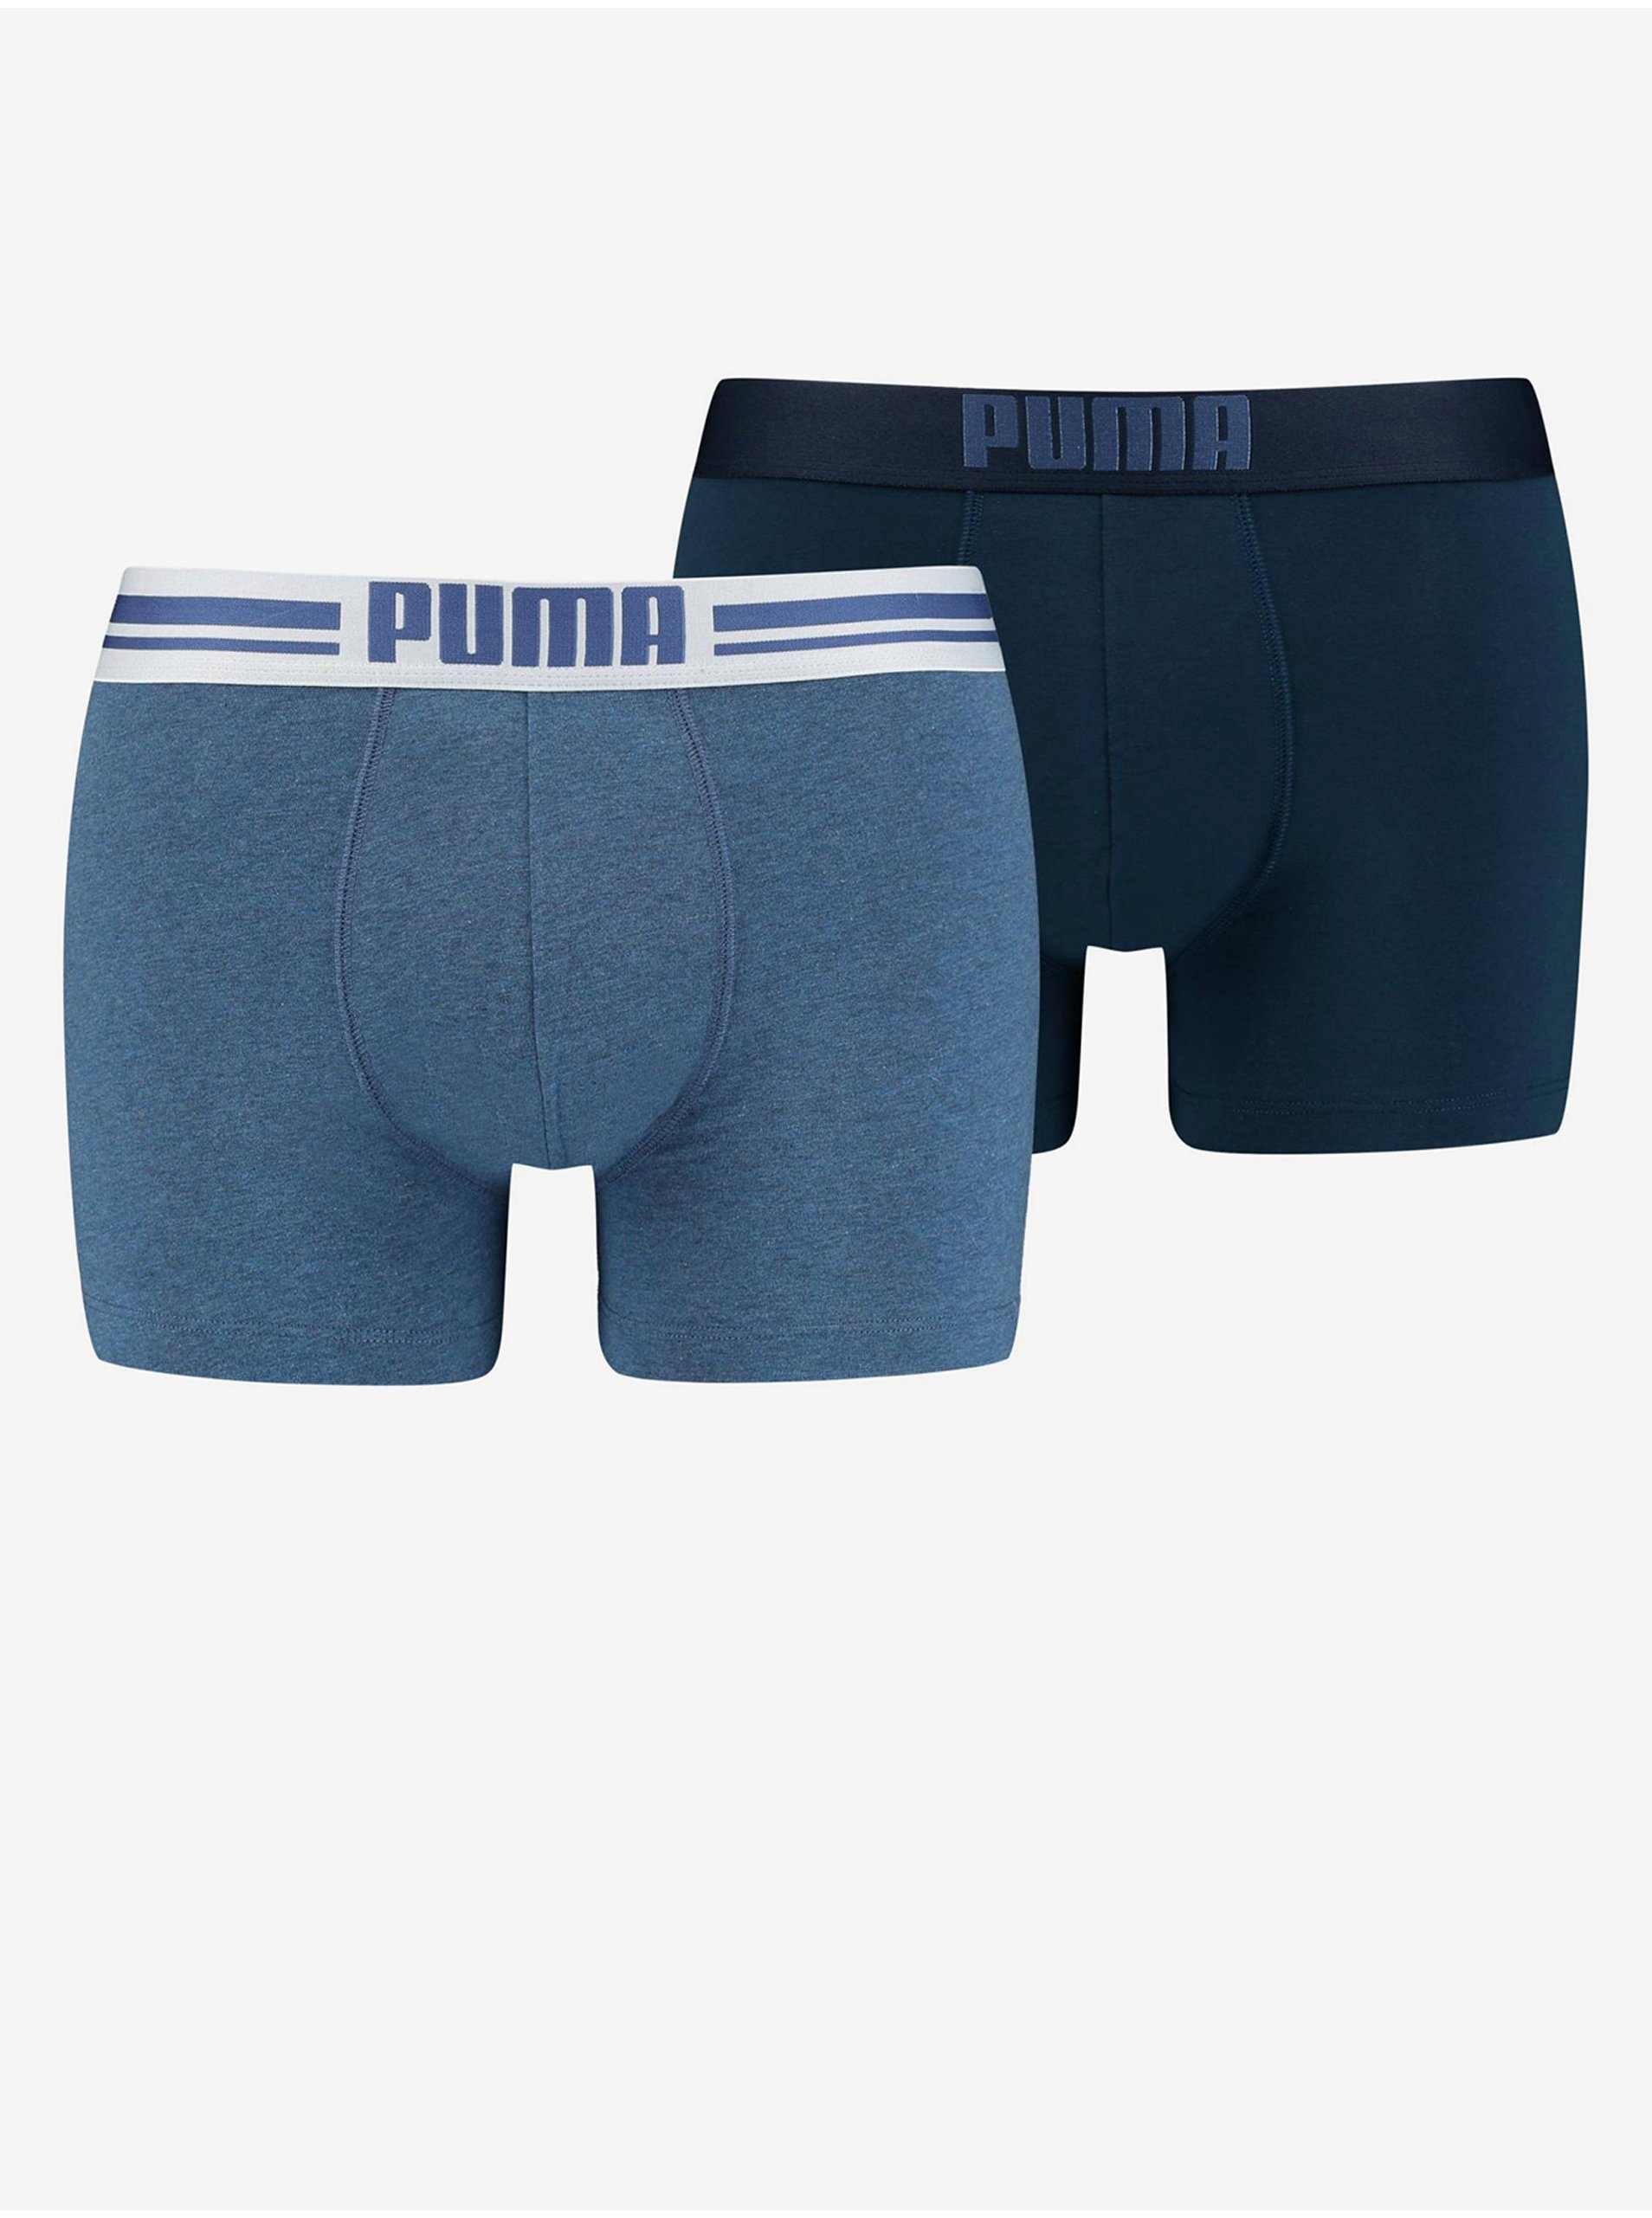 E-shop Sada dvoch pánskych boxerok v tmavomodrej a modrej farbe Puma